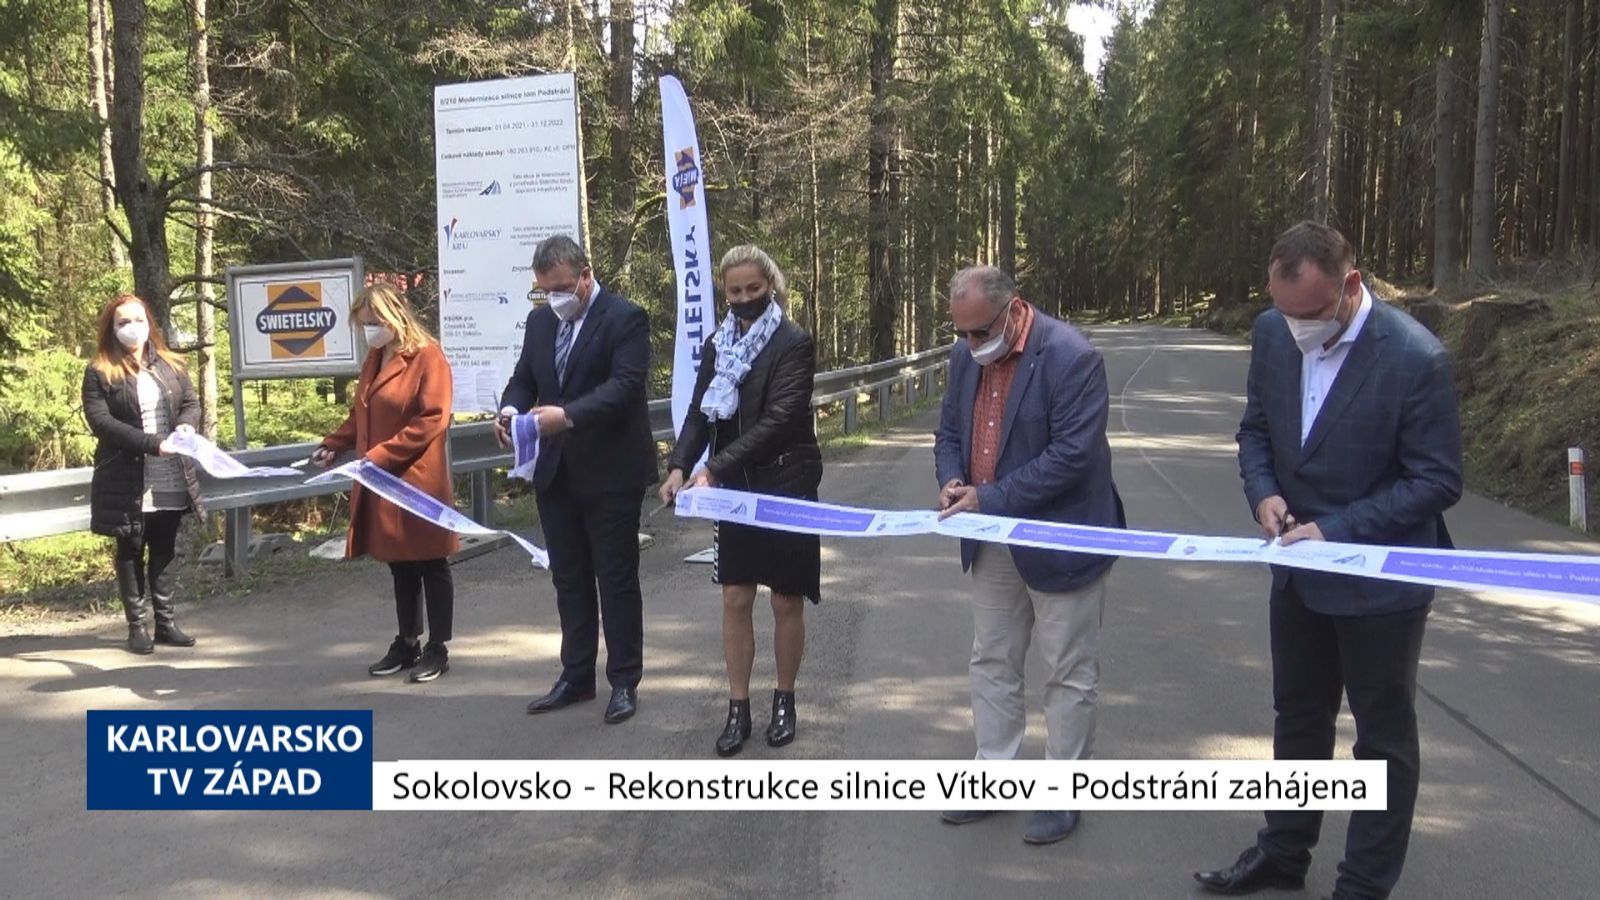 Sokolovsko: Rekonstrukce silnice Vítkov - Podstrání zahájena (TV Západ)